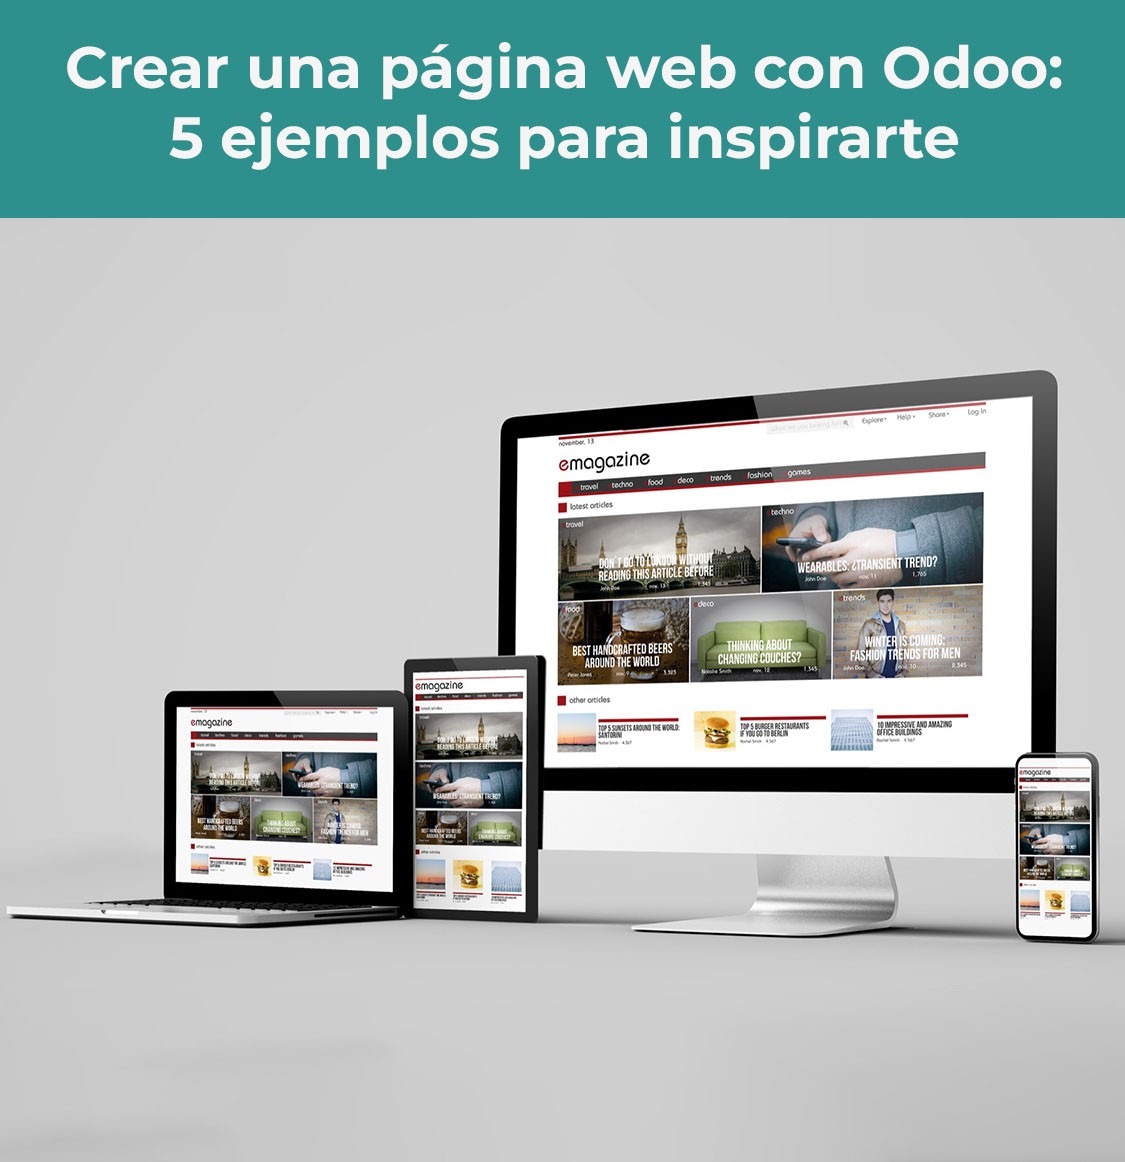 Título del artículo: Crear una página web con Odoo: 5 ejemplos para inspirarte